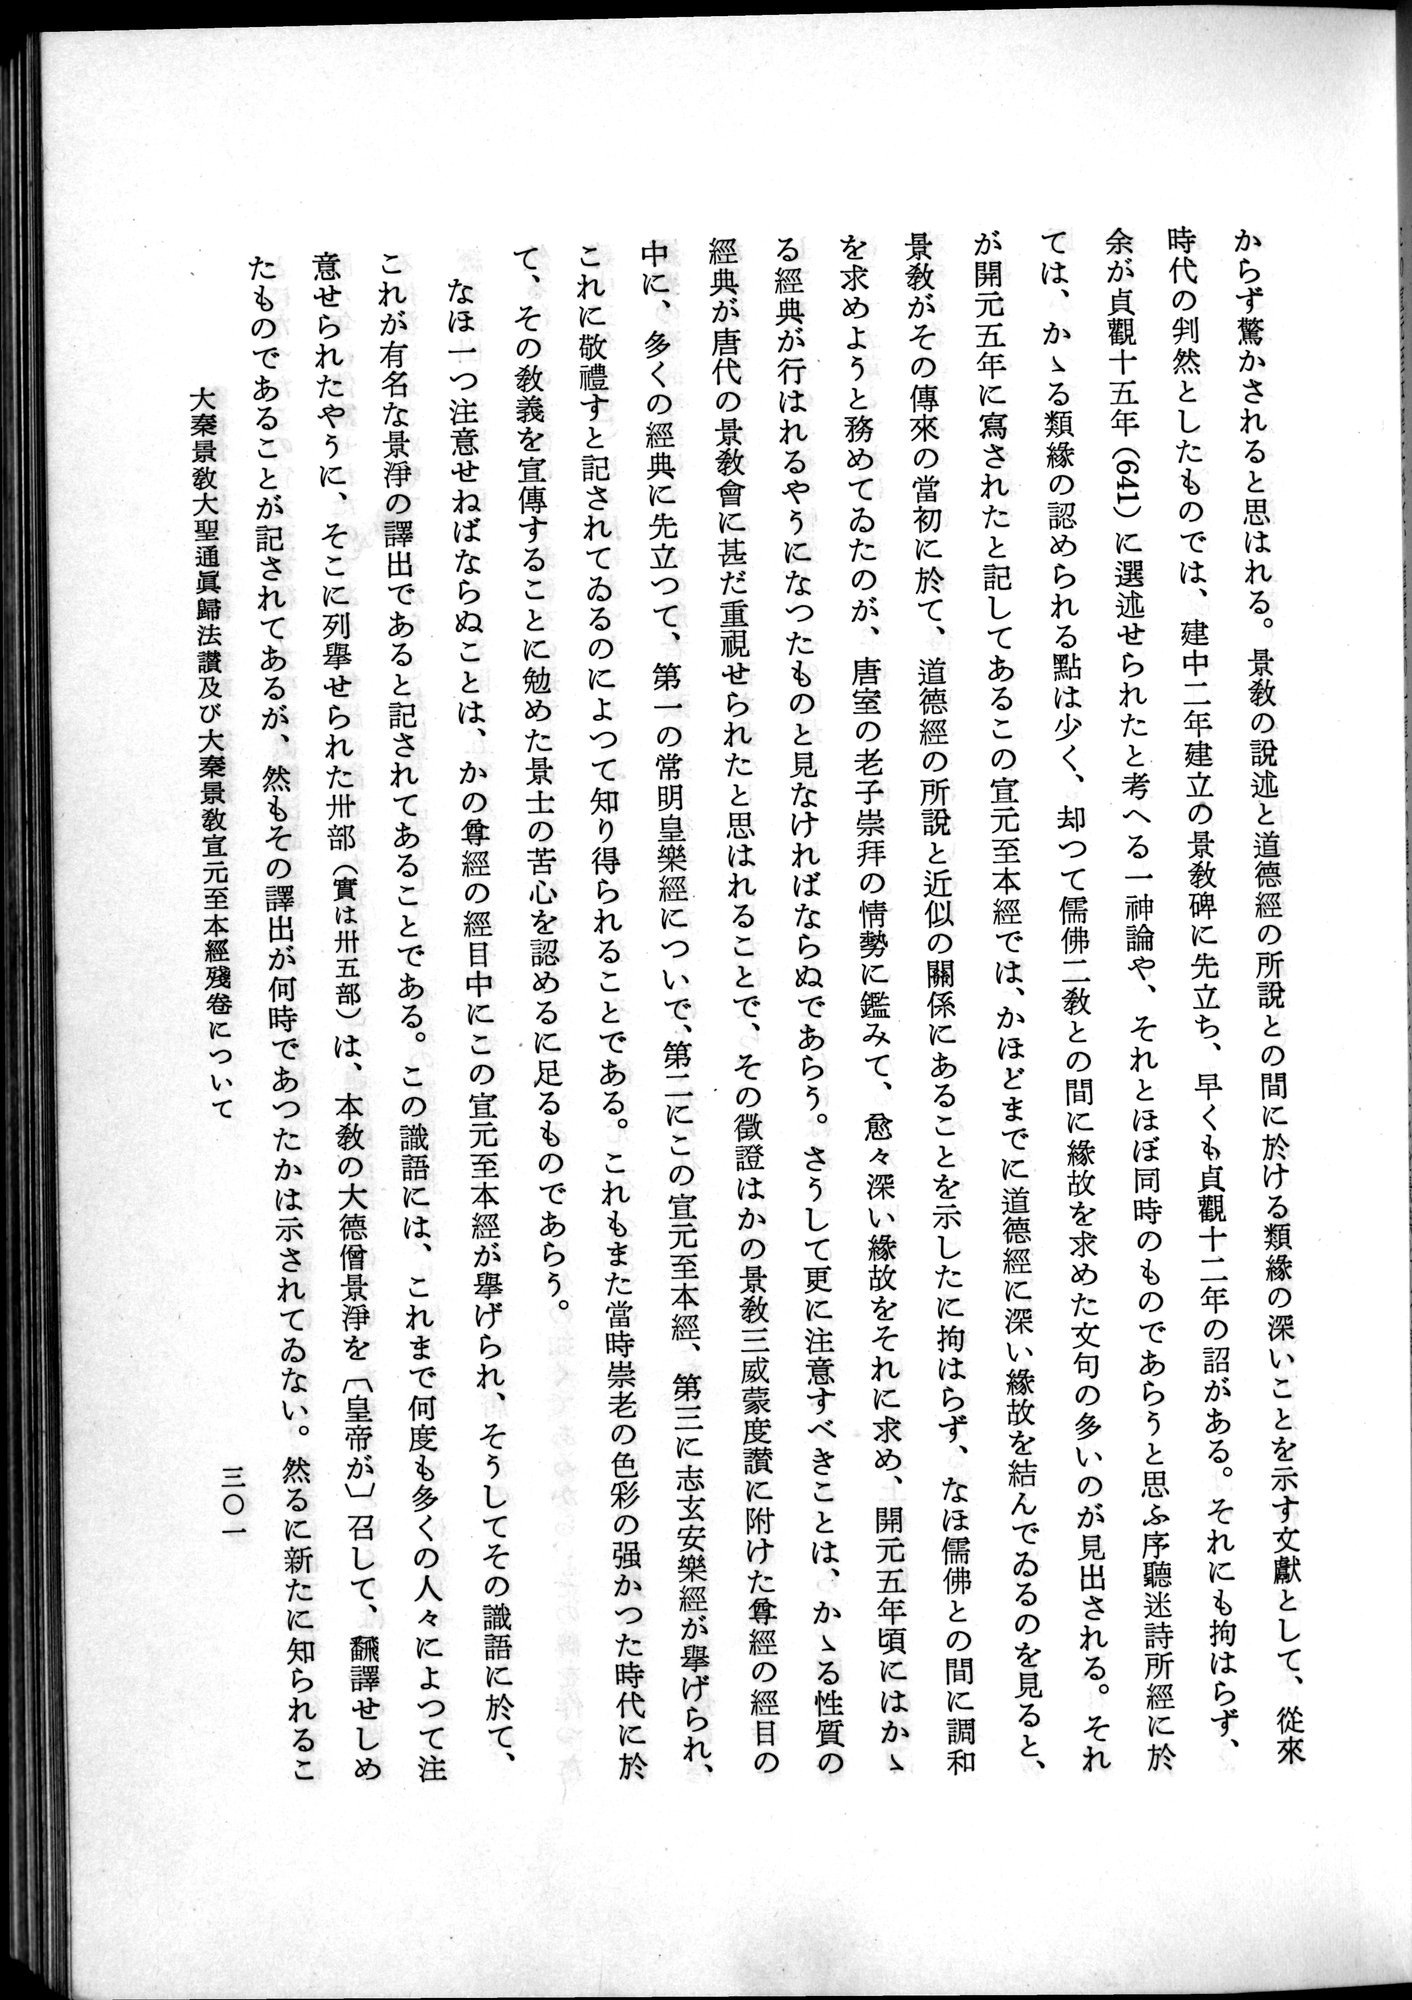 羽田博士史学論文集 : vol.2 / Page 363 (Grayscale High Resolution Image)